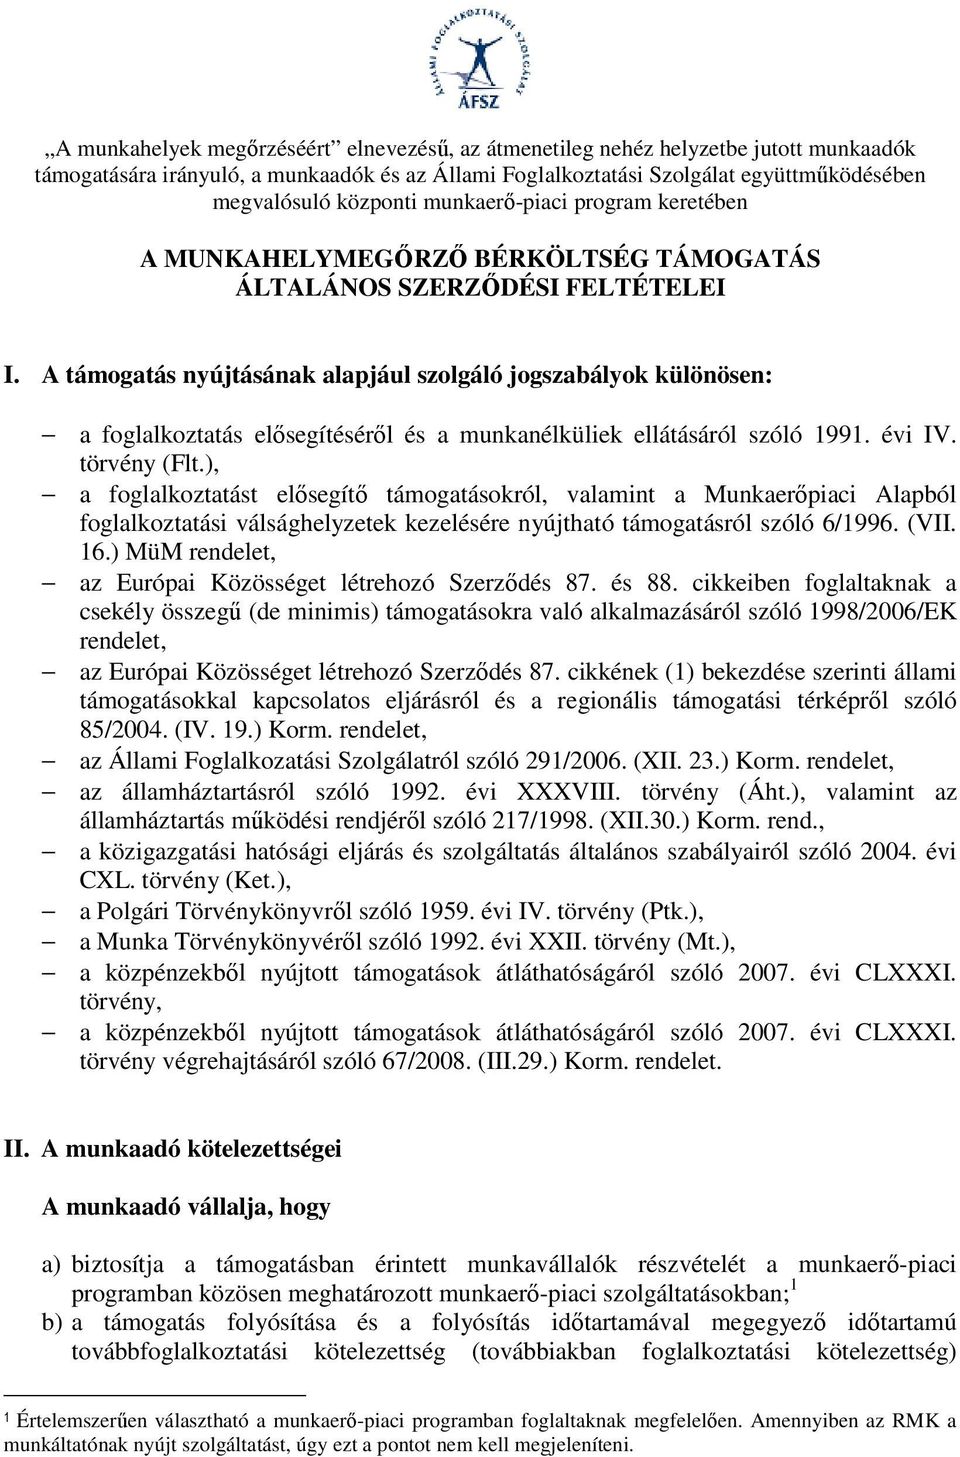 A támogatás nyújtásának alapjául szolgáló jogszabályok különösen: a foglalkoztatás elısegítésérıl és a munkanélküliek ellátásáról szóló 1991. évi IV. törvény (Flt.